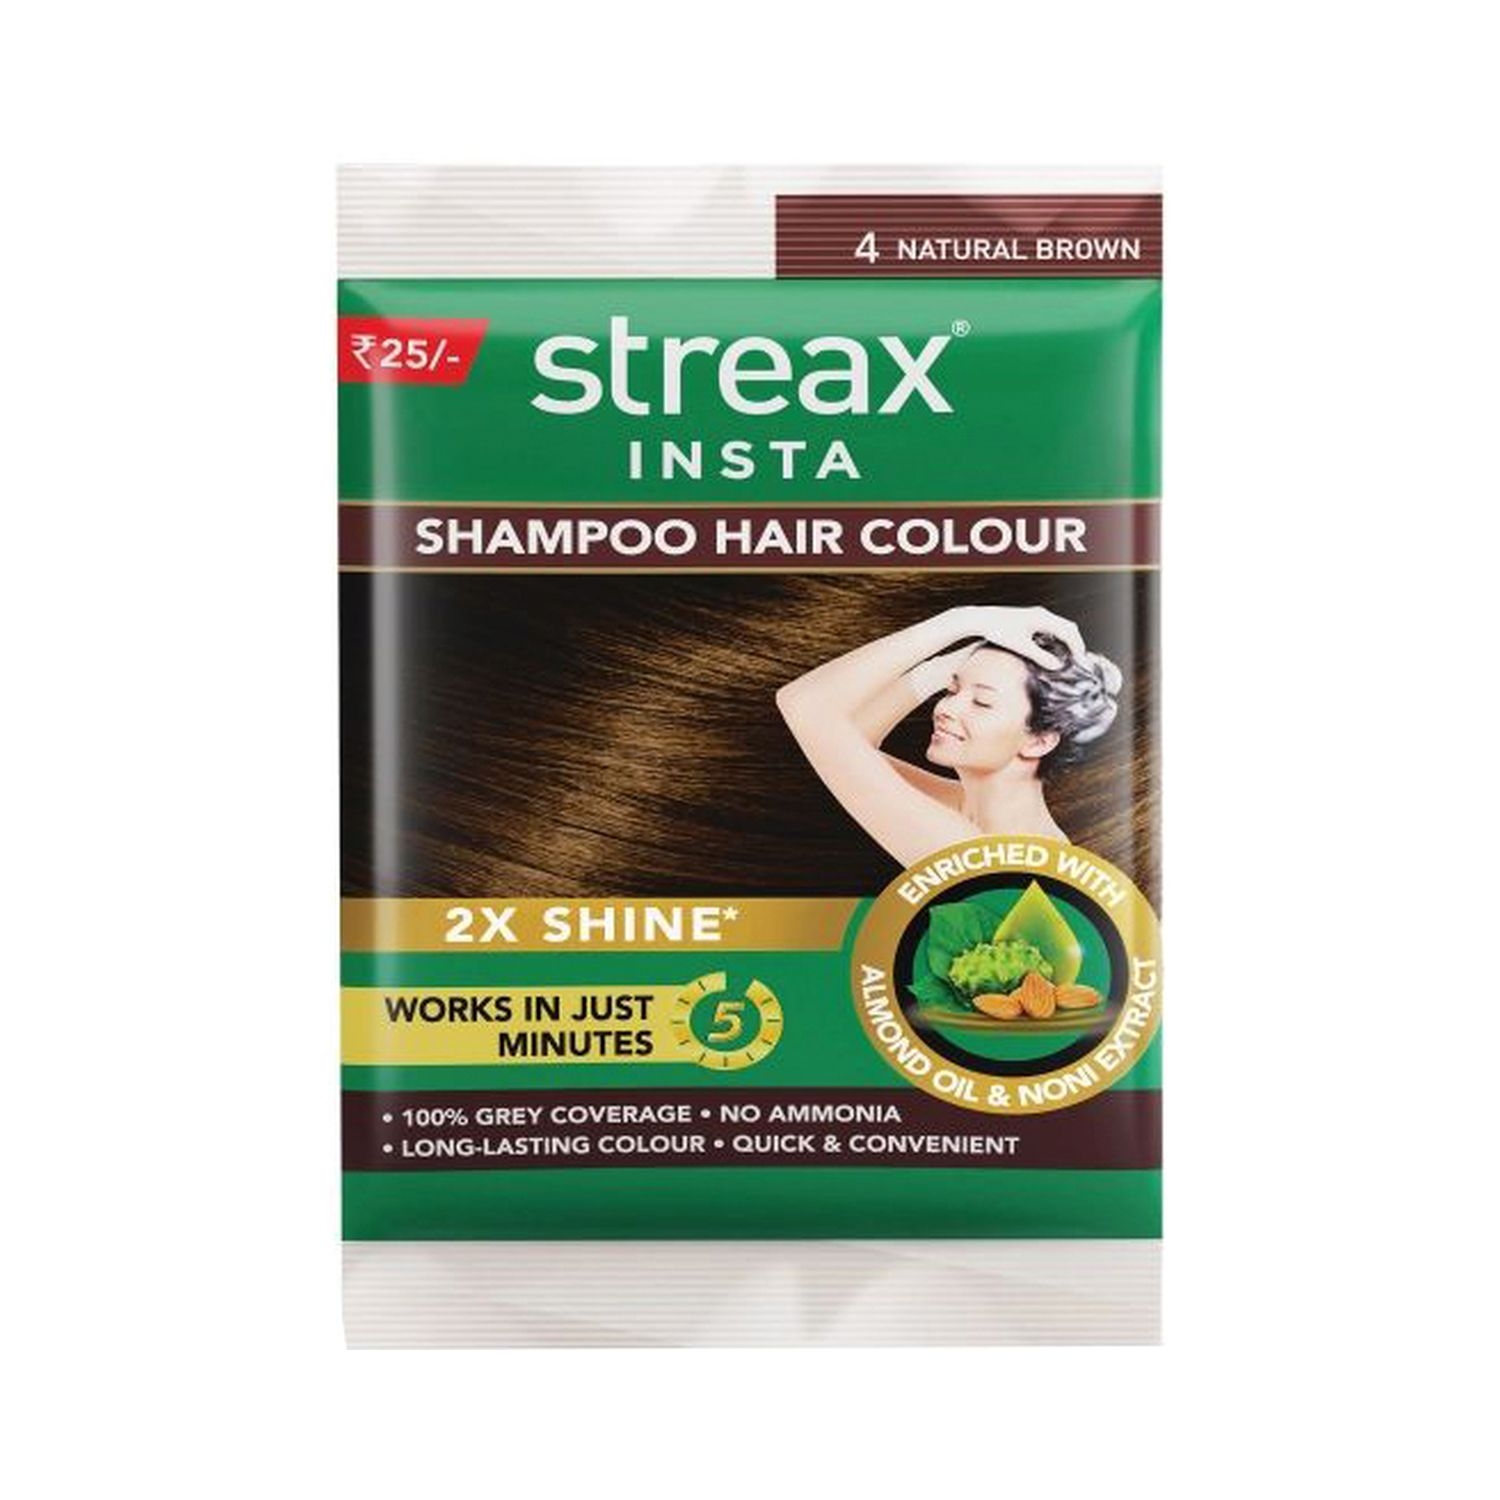 Streax | Streax Insta Shampoo Hair Colour - 4 Natural Brown (18ml)